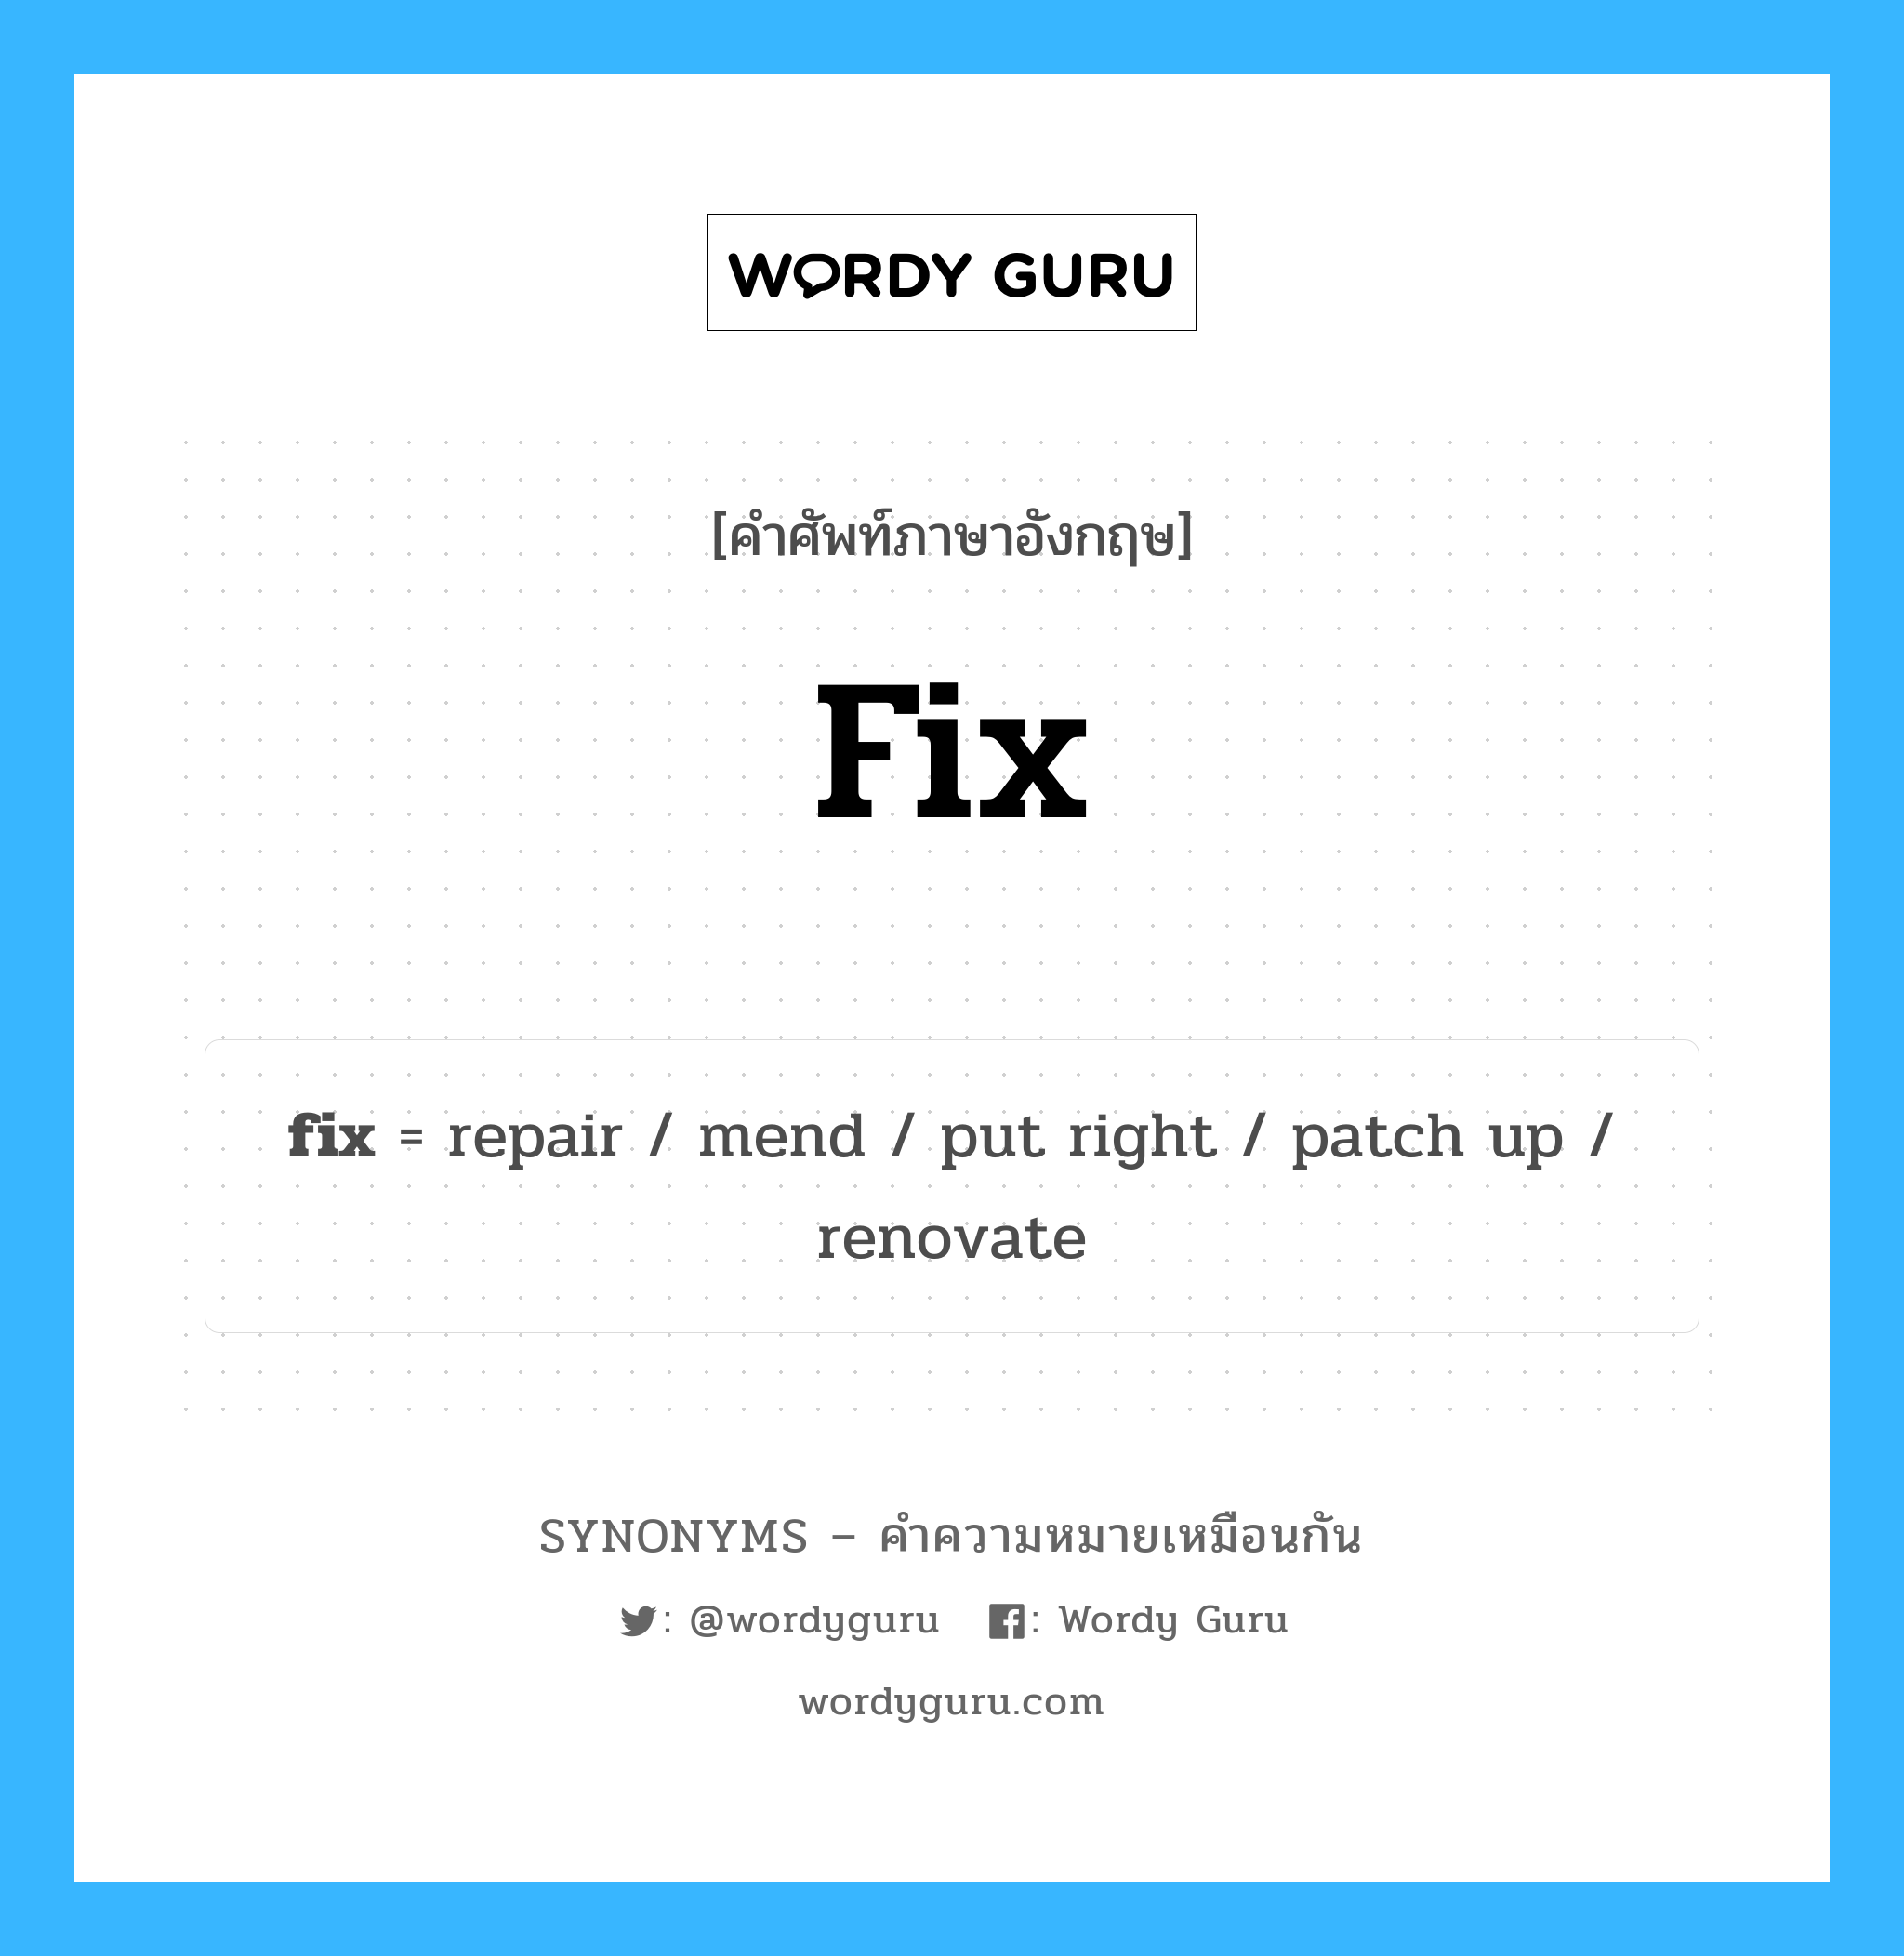 repair เป็นหนึ่งใน fix และมีคำอื่น ๆ อีกดังนี้, คำศัพท์ภาษาอังกฤษ repair ความหมายคล้ายกันกับ fix แปลว่า ซ่อมแซม หมวด fix